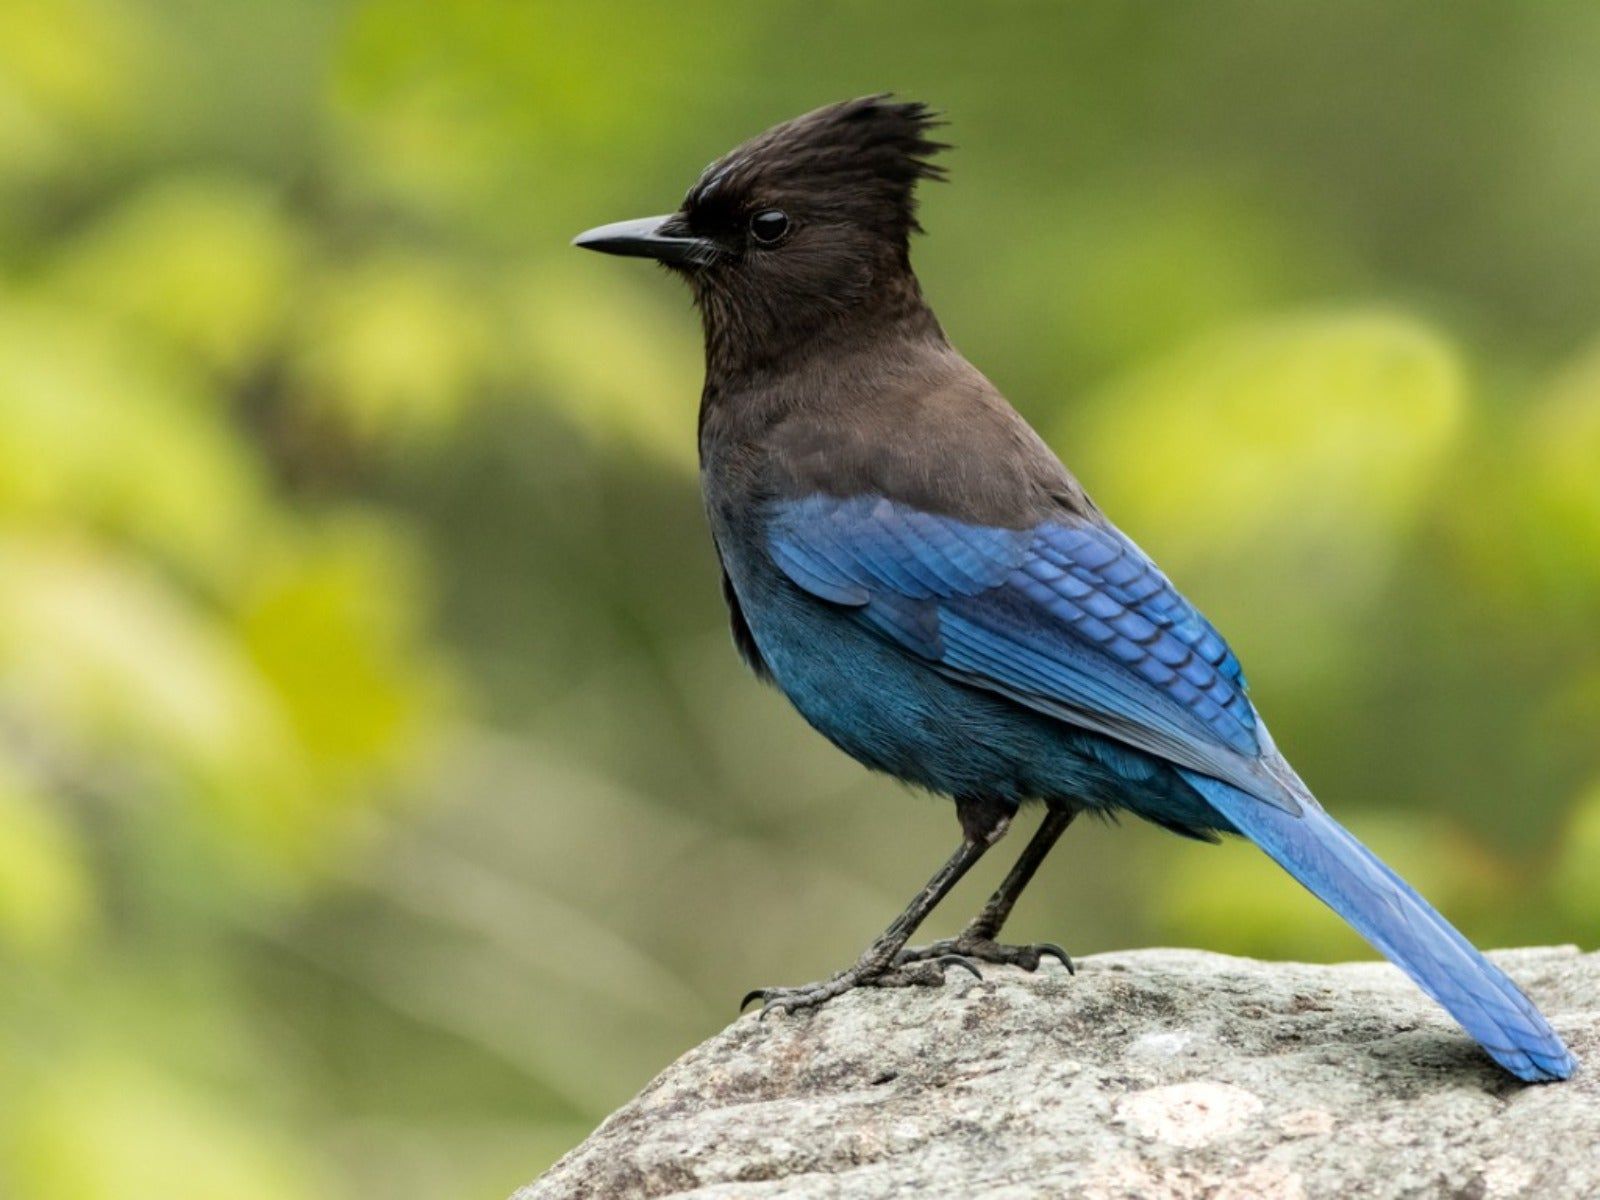 Native, Wild Birds Of The Pacific Northwest Region | Gardening Know How